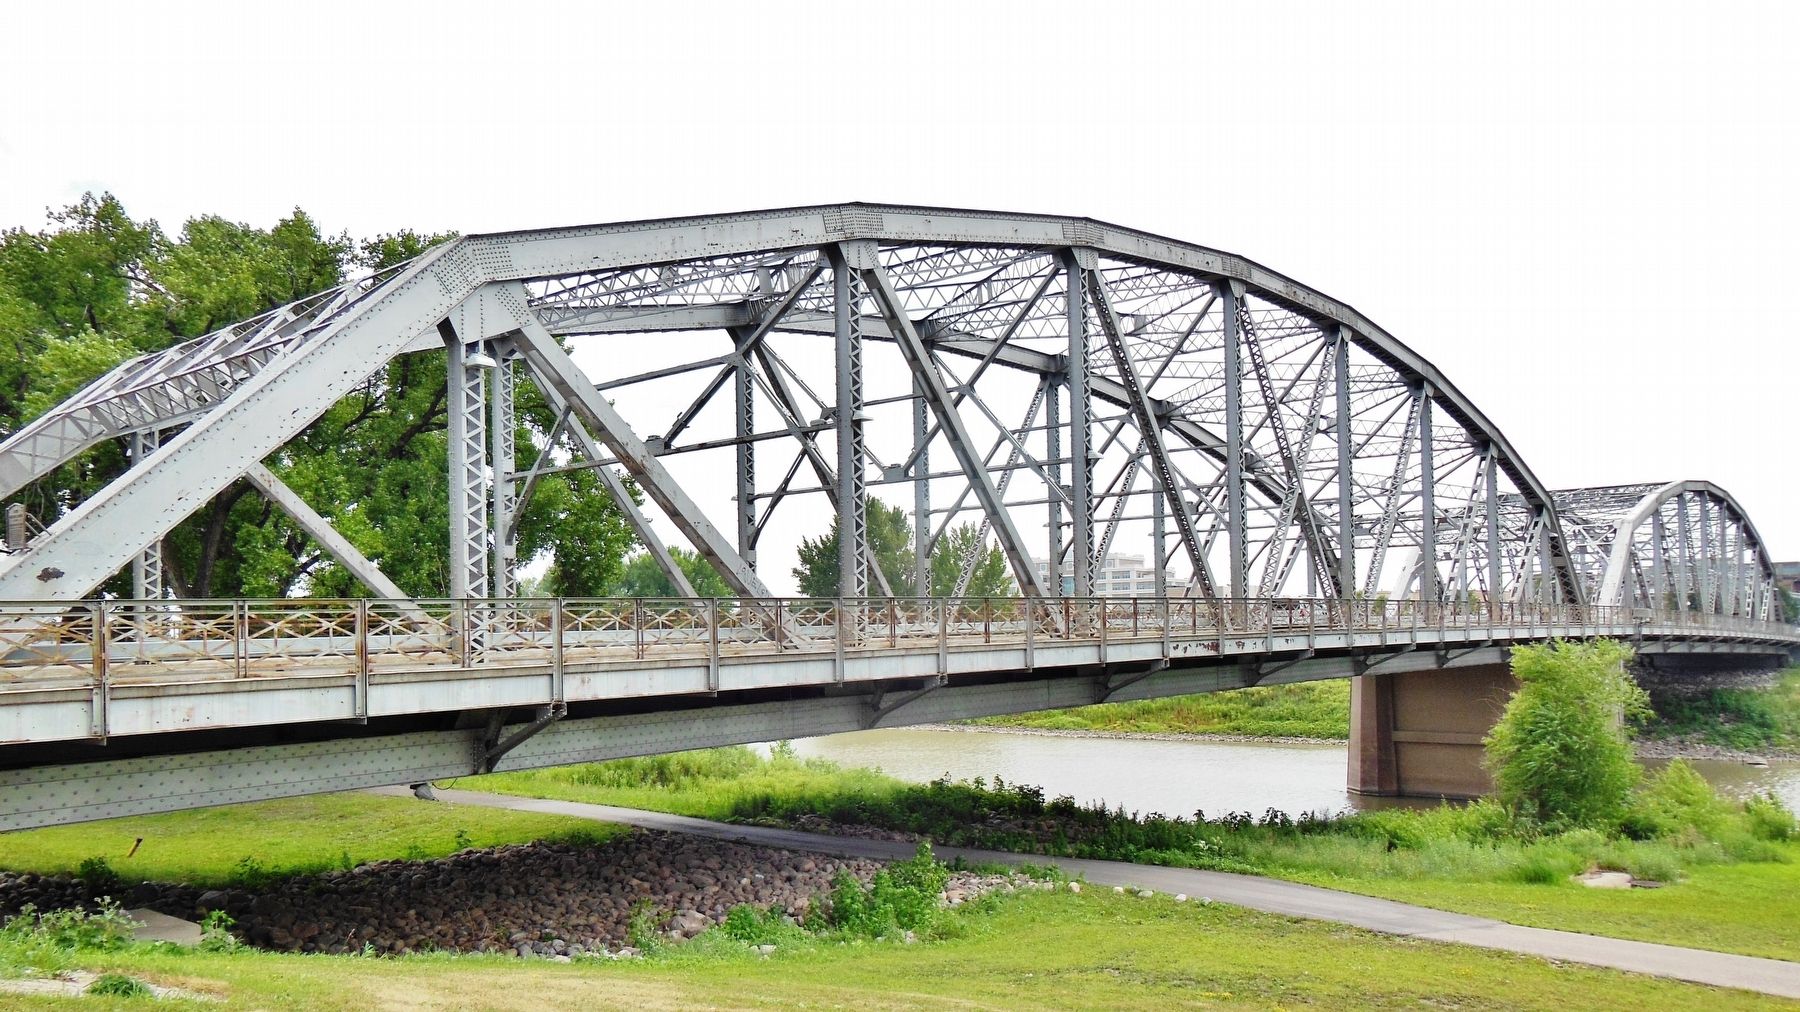 Sorlie Memorial Bridge across Red River (<i>North Dakota on opposite side</i>) image. Click for full size.